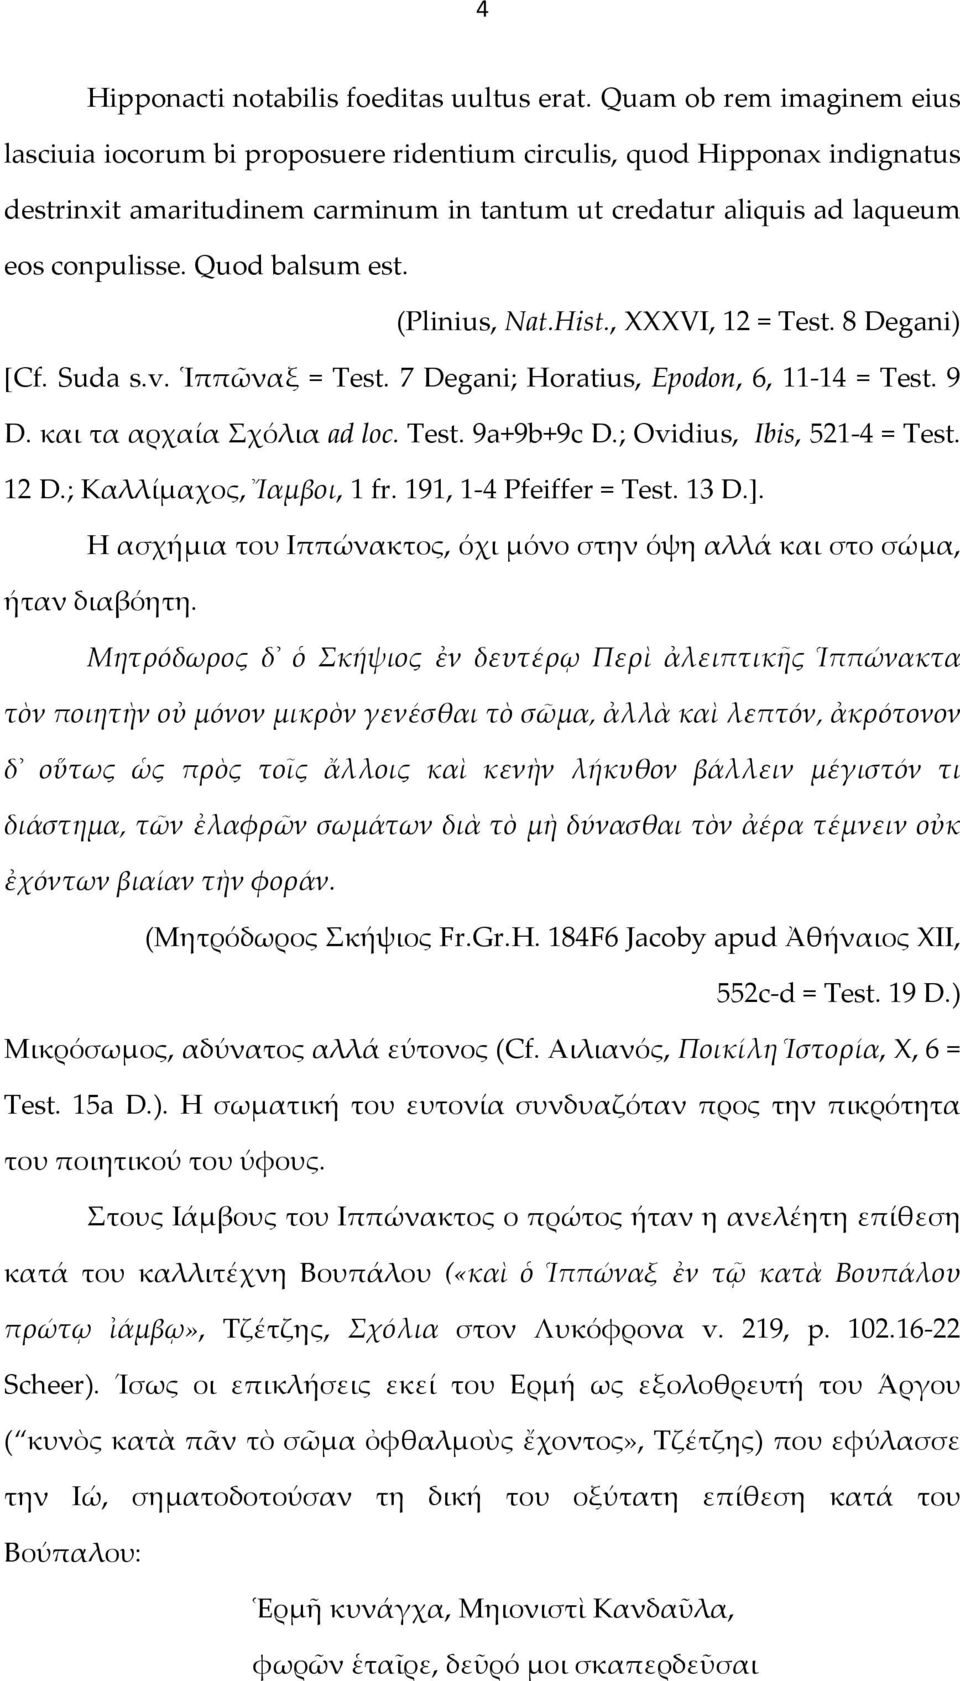 Quod balsum est. (Plinius, Nat.Hist., XXXVI, 12 = Test. 8 Degani) [Cf. Suda s.v. Ἱππῶναξ = Test. 7 Degani; Horatius, Epodon, 6, 11-14 = Test. 9 D. και τα αρχαία Σχόλια ad loc. Test. 9a+9b+9c D.